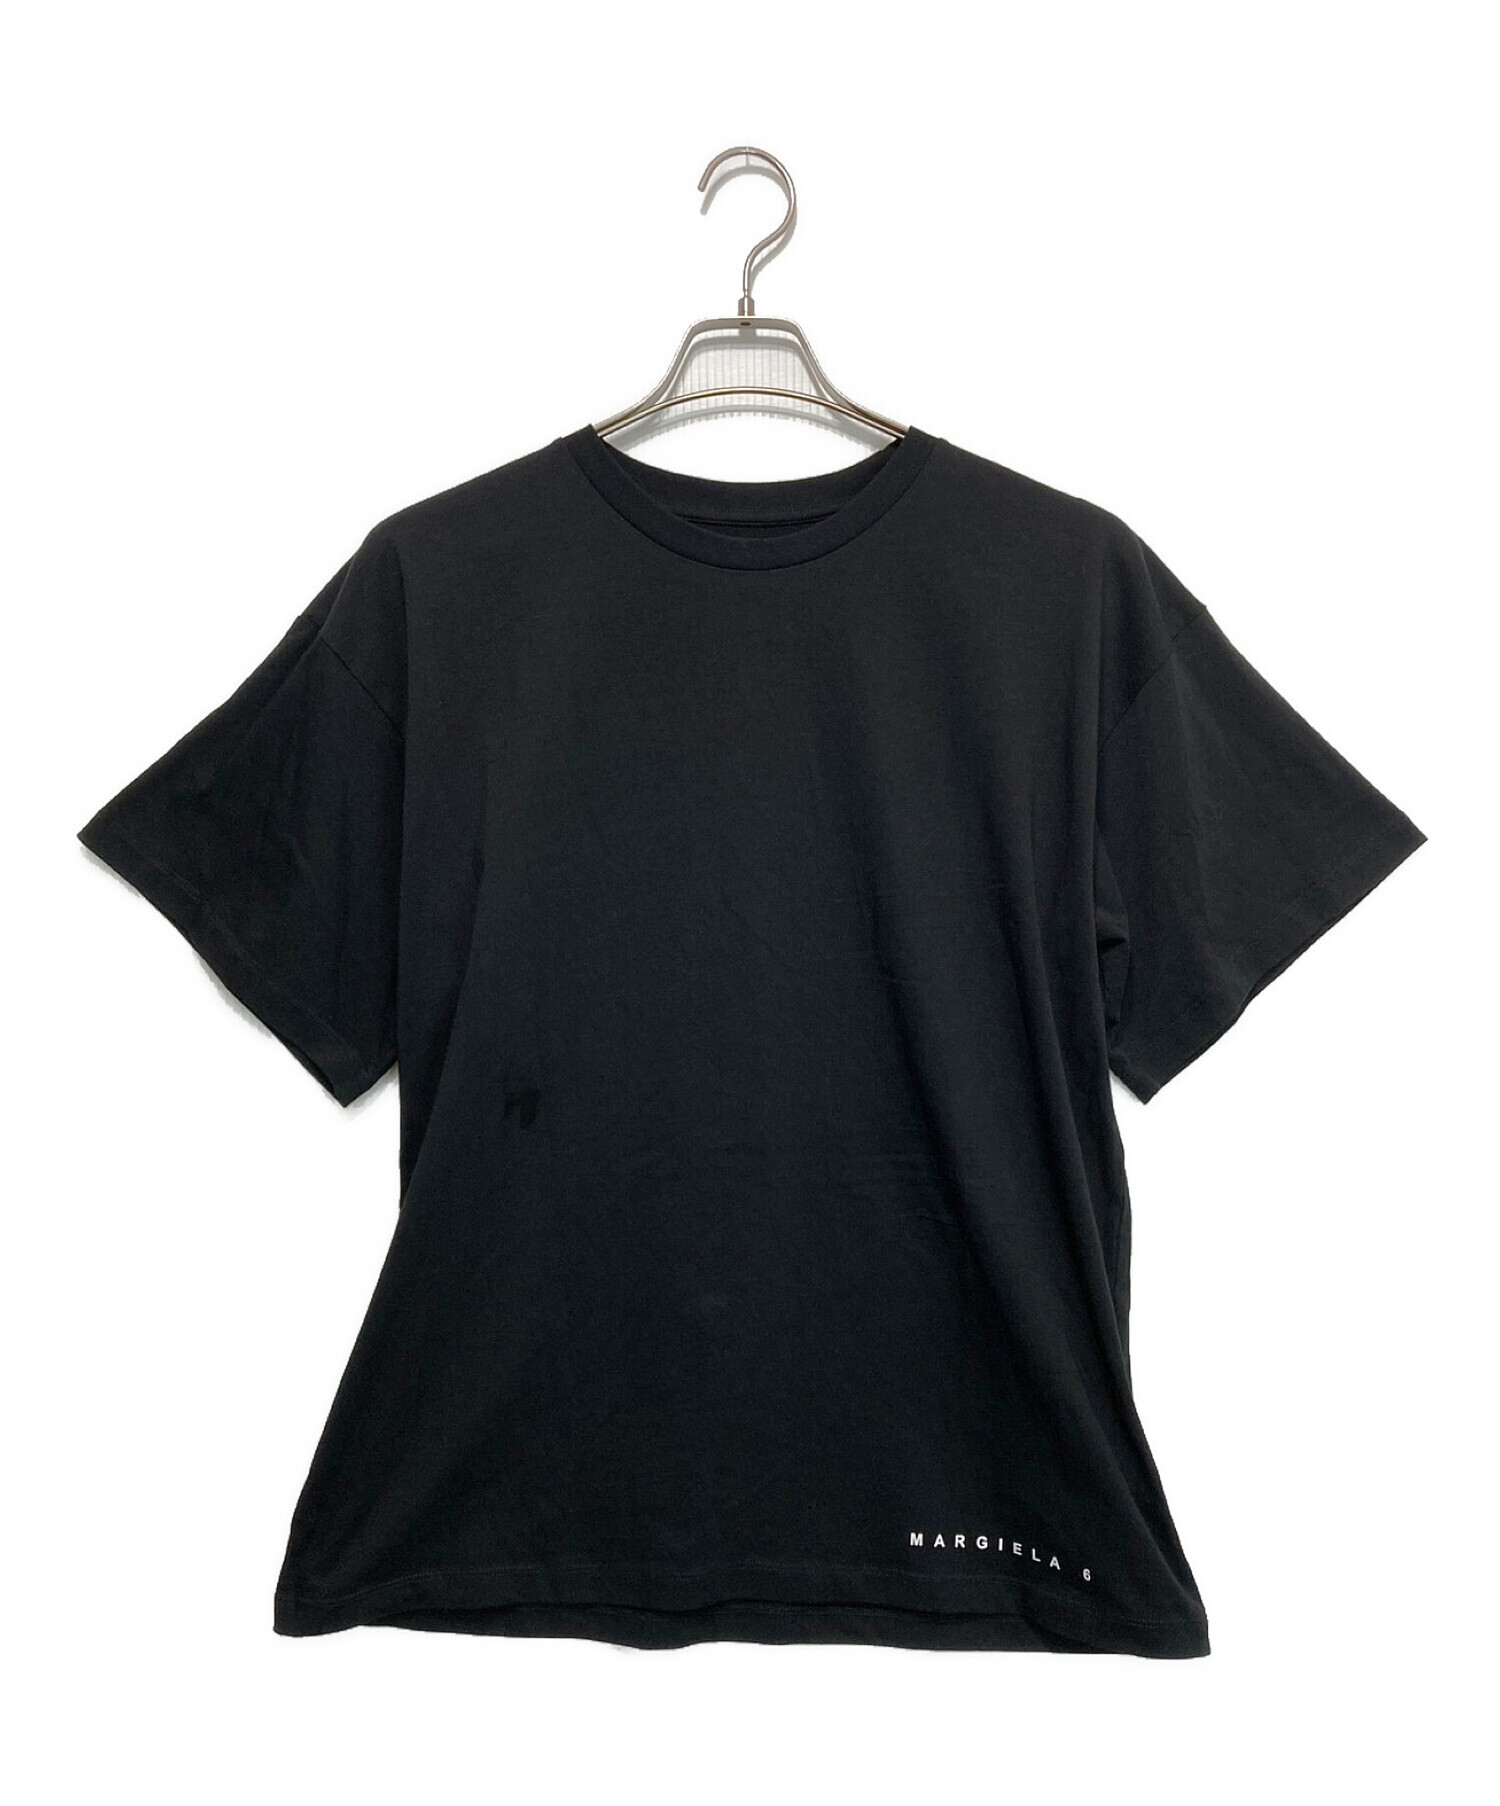 MM6 Maison Margiela (エムエムシックス メゾンマルジェラ) ブランドロゴ半袖Tシャツカットソー ブラック サイズ:14